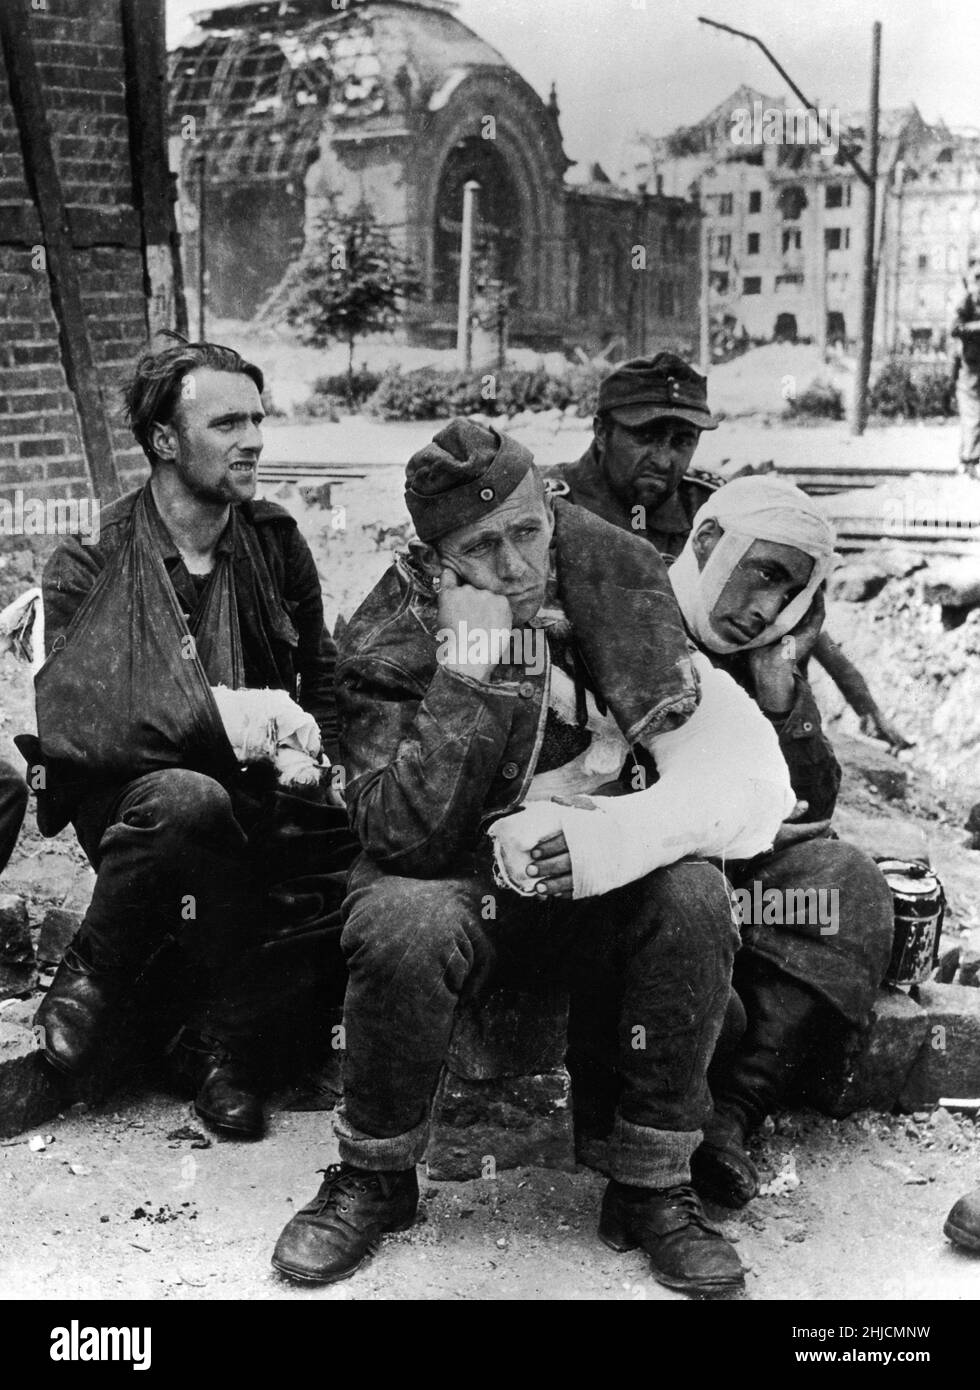 Prisonniers de guerre allemands à Kiel, en Allemagne, en 1945, à la fin de la Seconde Guerre mondiale. Banque D'Images